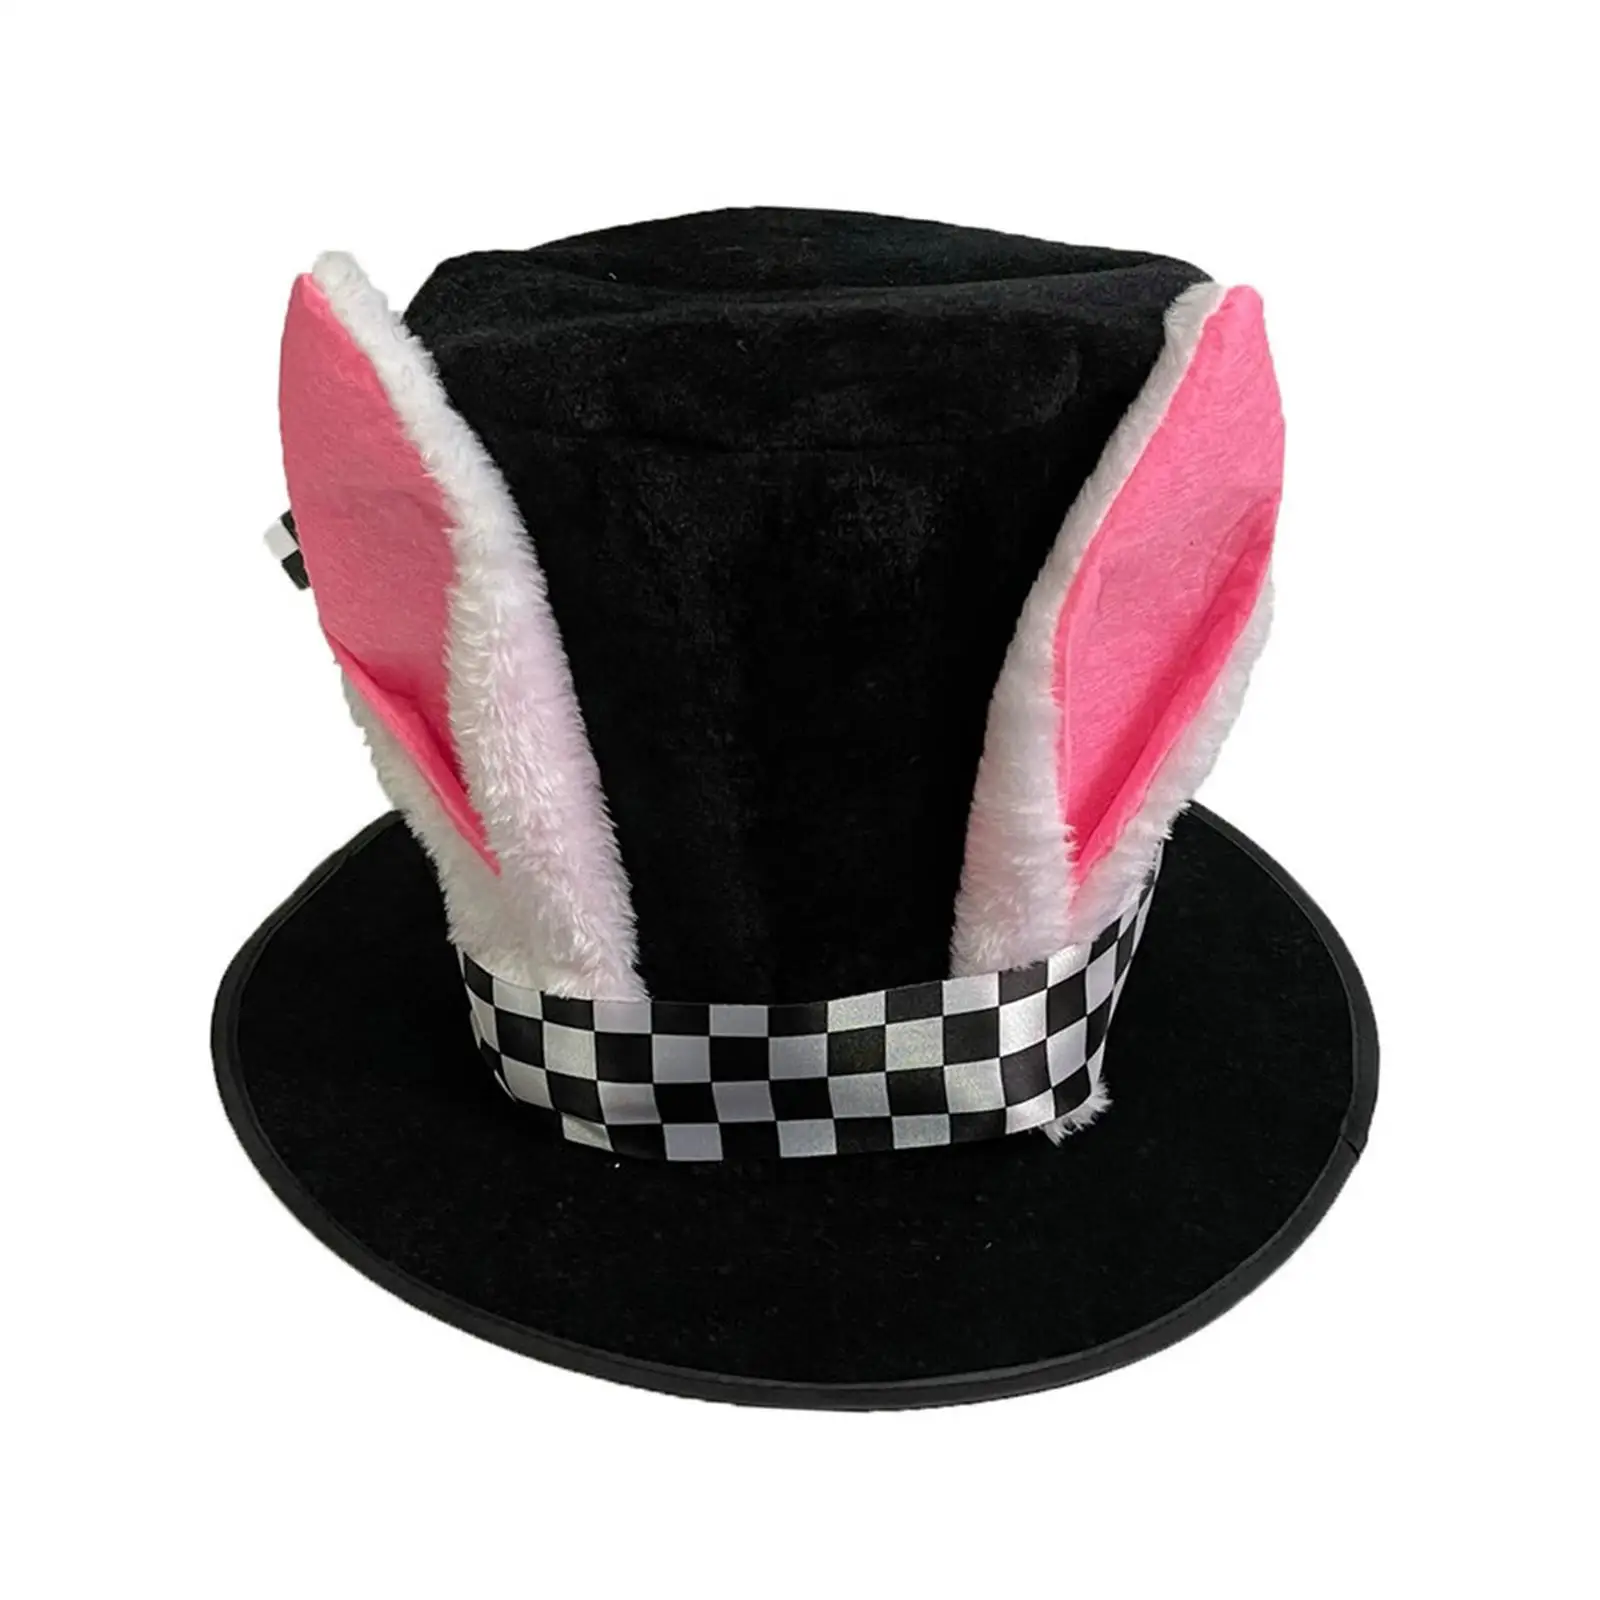 Bunny Ear Top Hat Fancy Dress Head Gear Headwear Birthday Gift Easter Rabbit Costume for Halloween Festival Party Adult Carnival